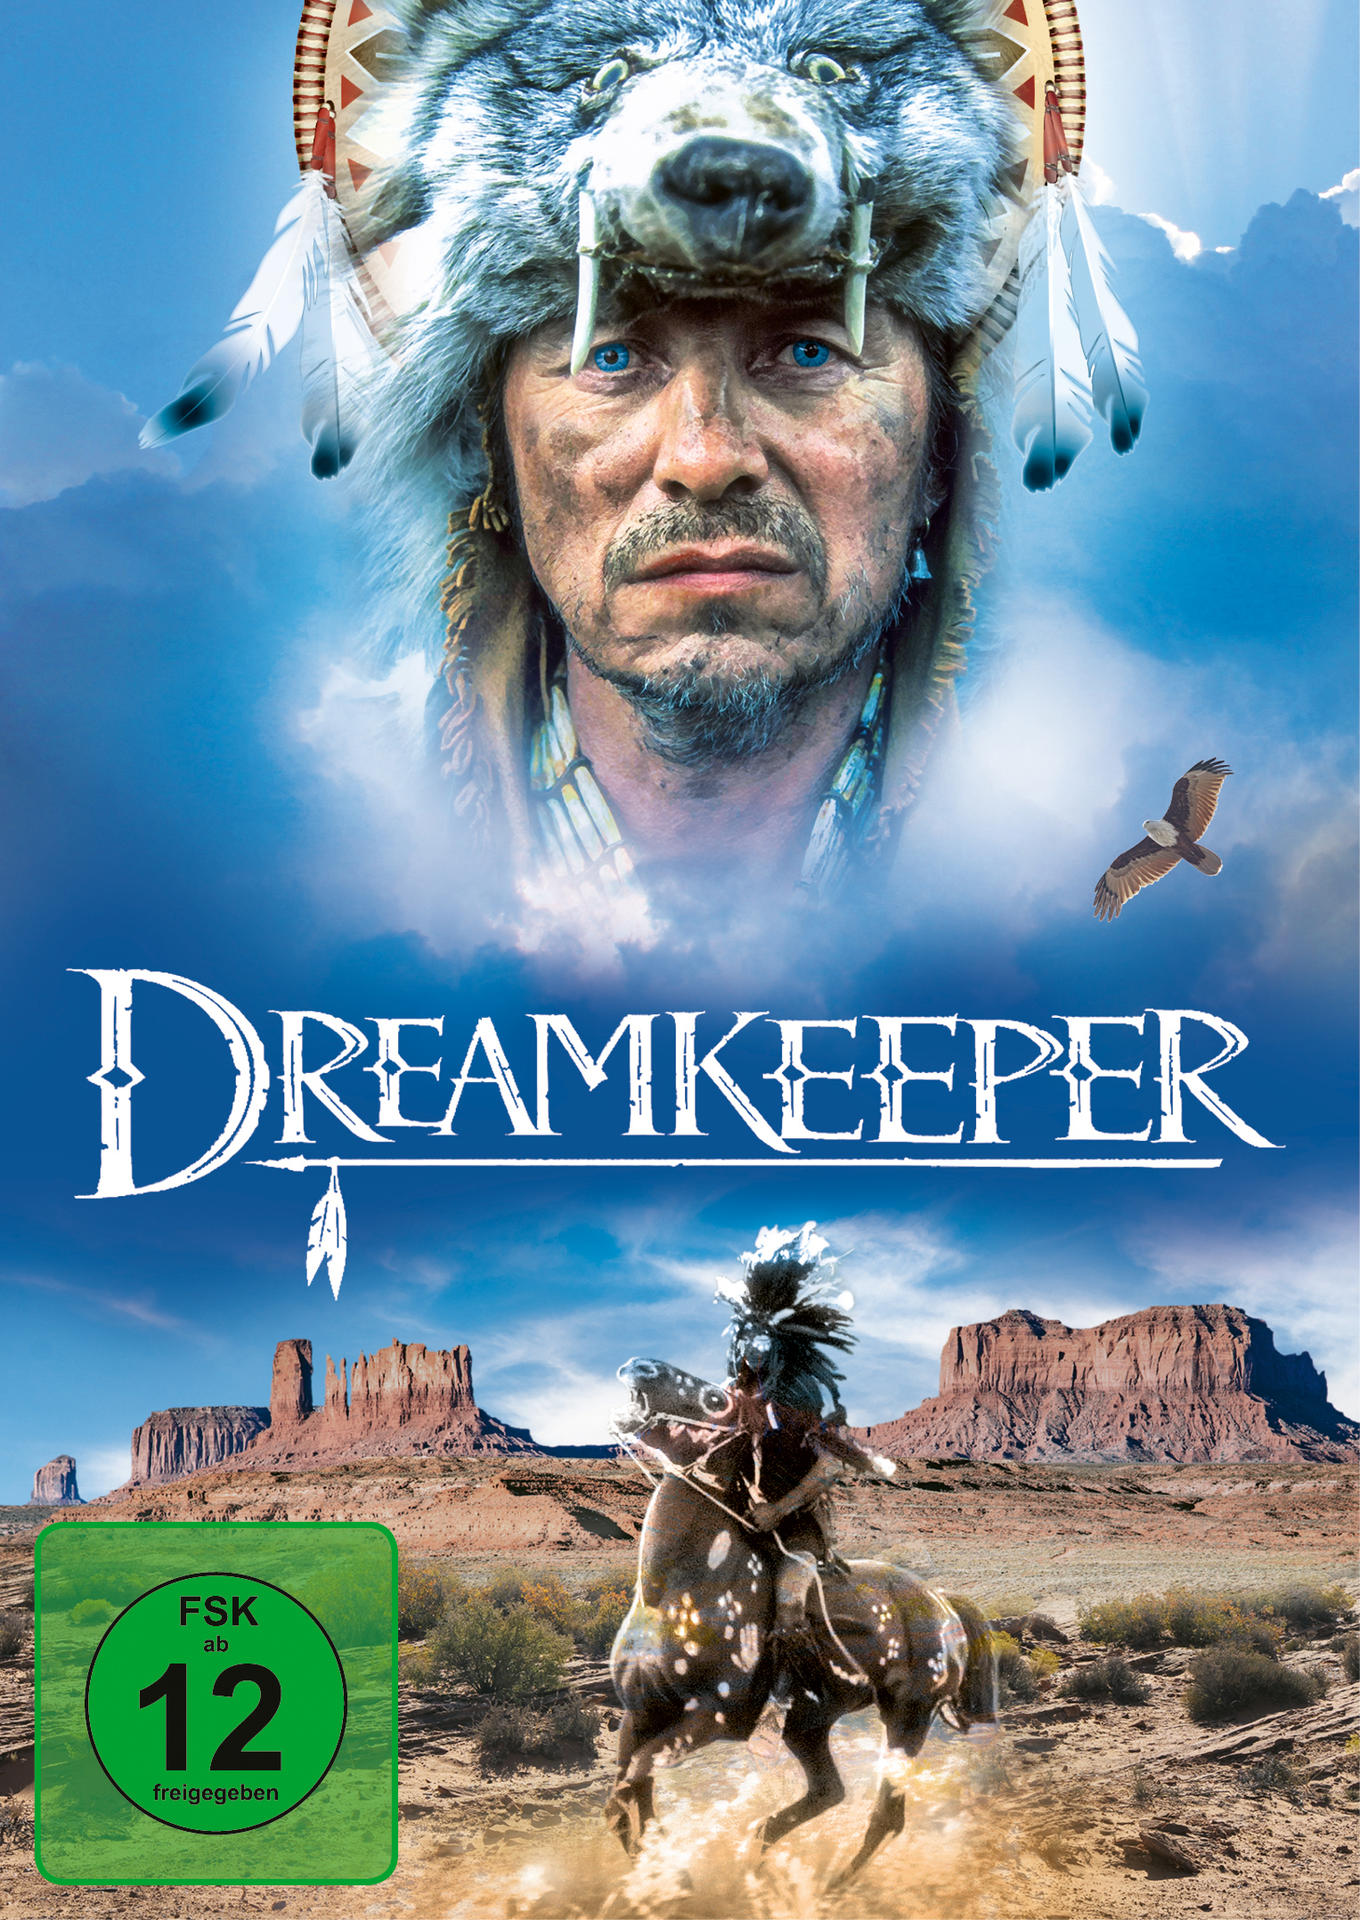 DVD Dreamkeeper